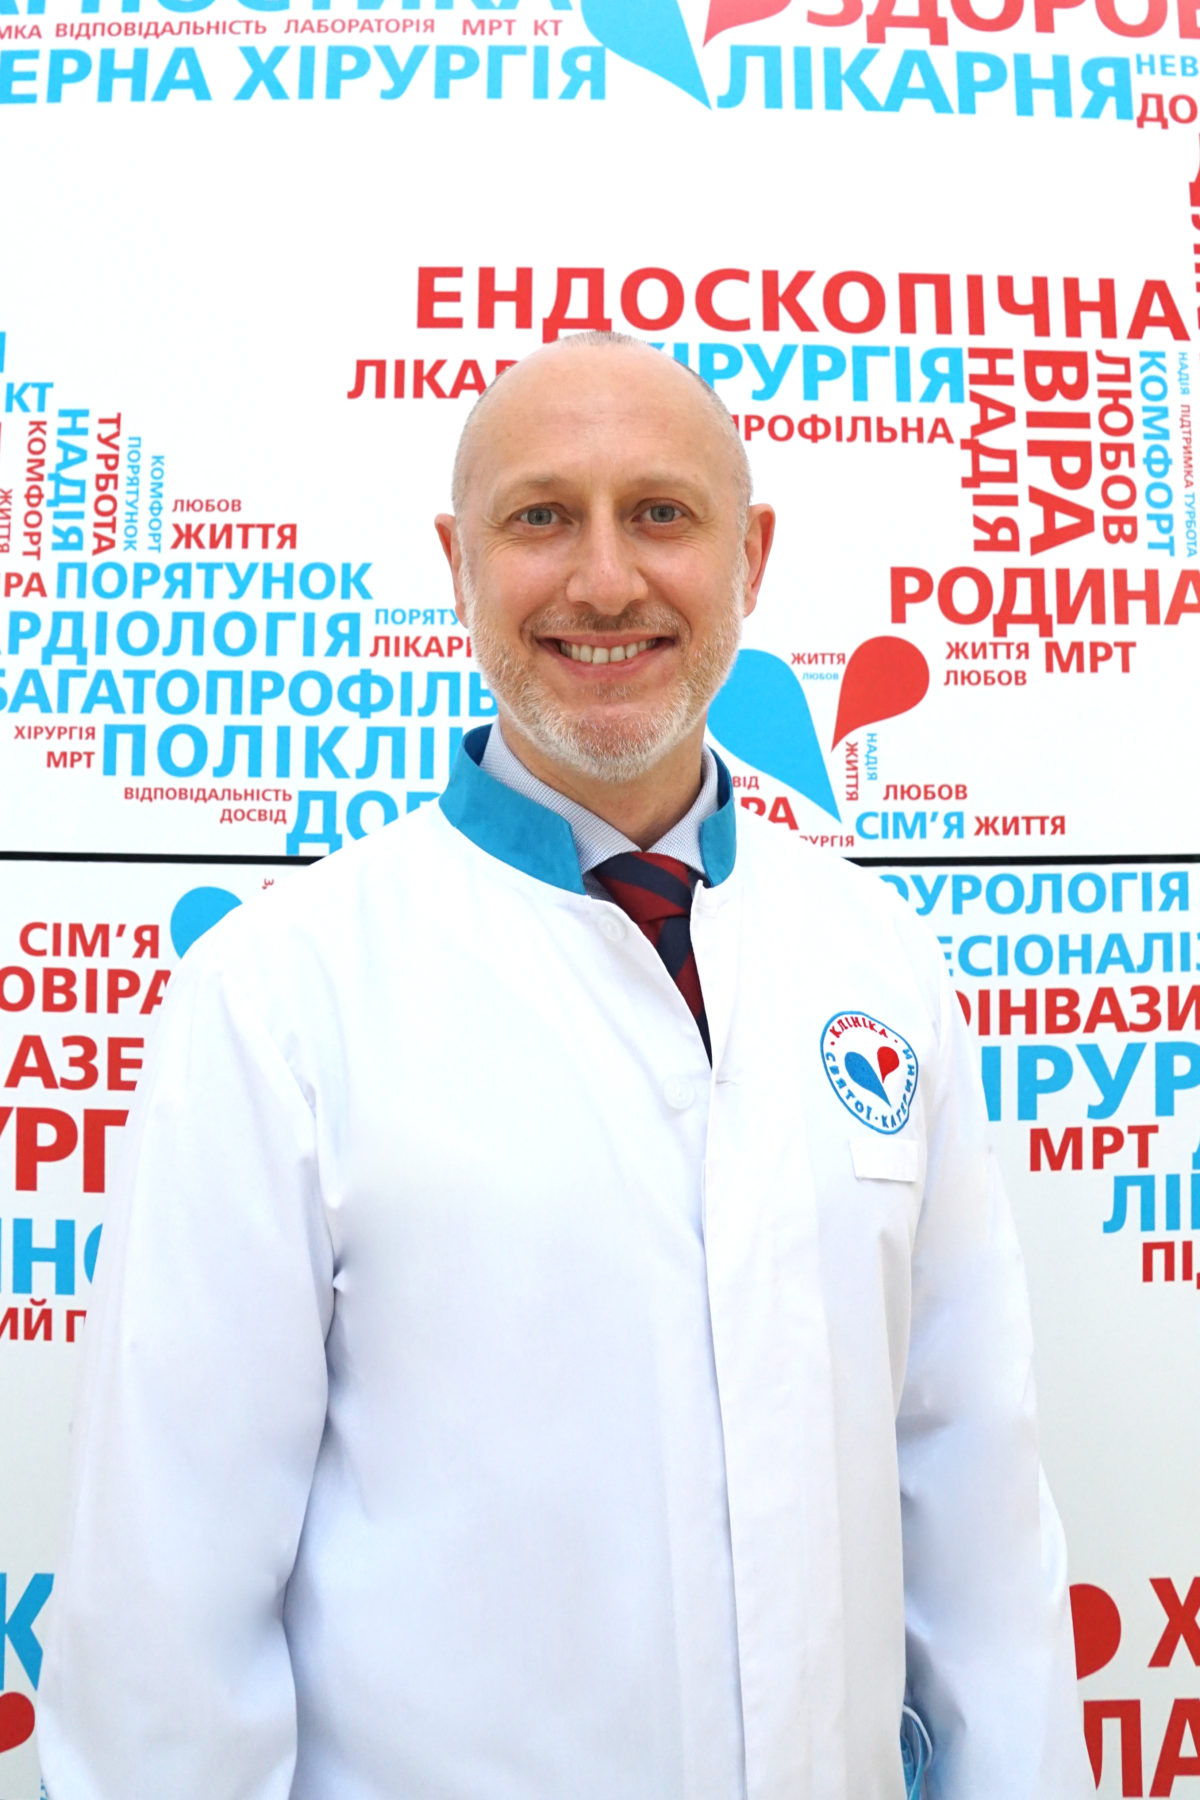 Сажиенко Владимир Вячеславович - 11 - svekaterina.ua